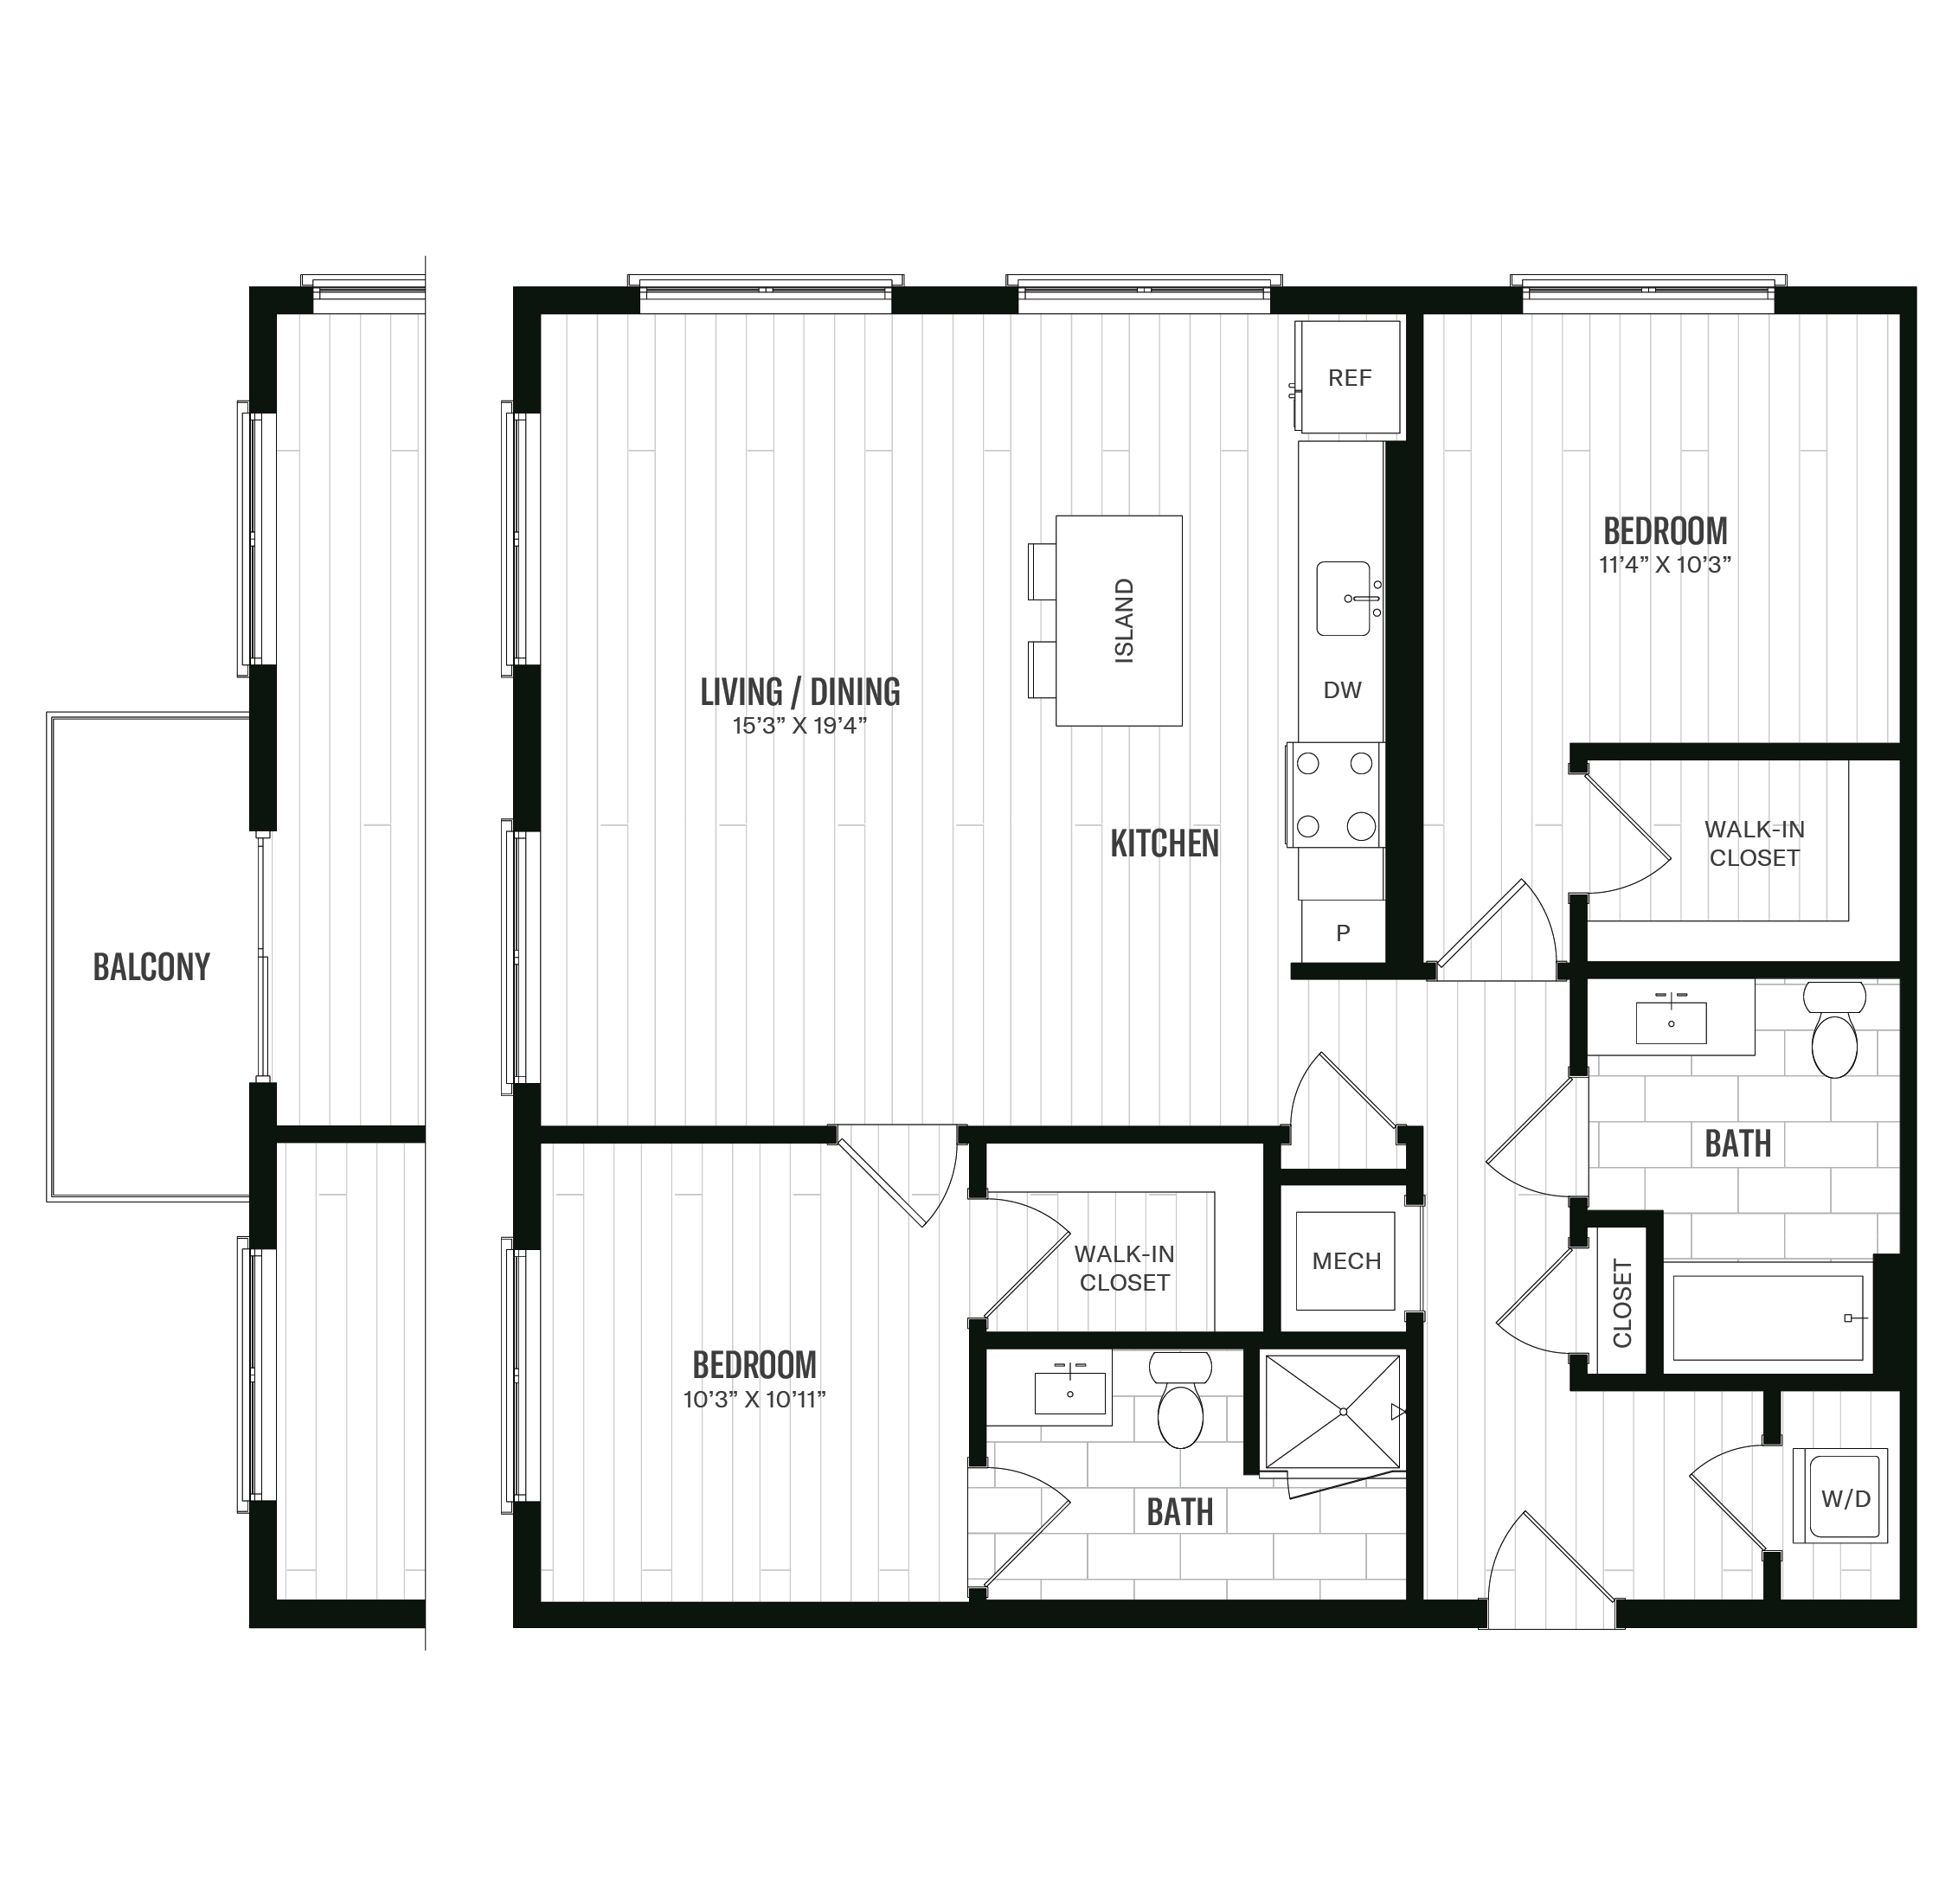 Floorplan image of unit 363